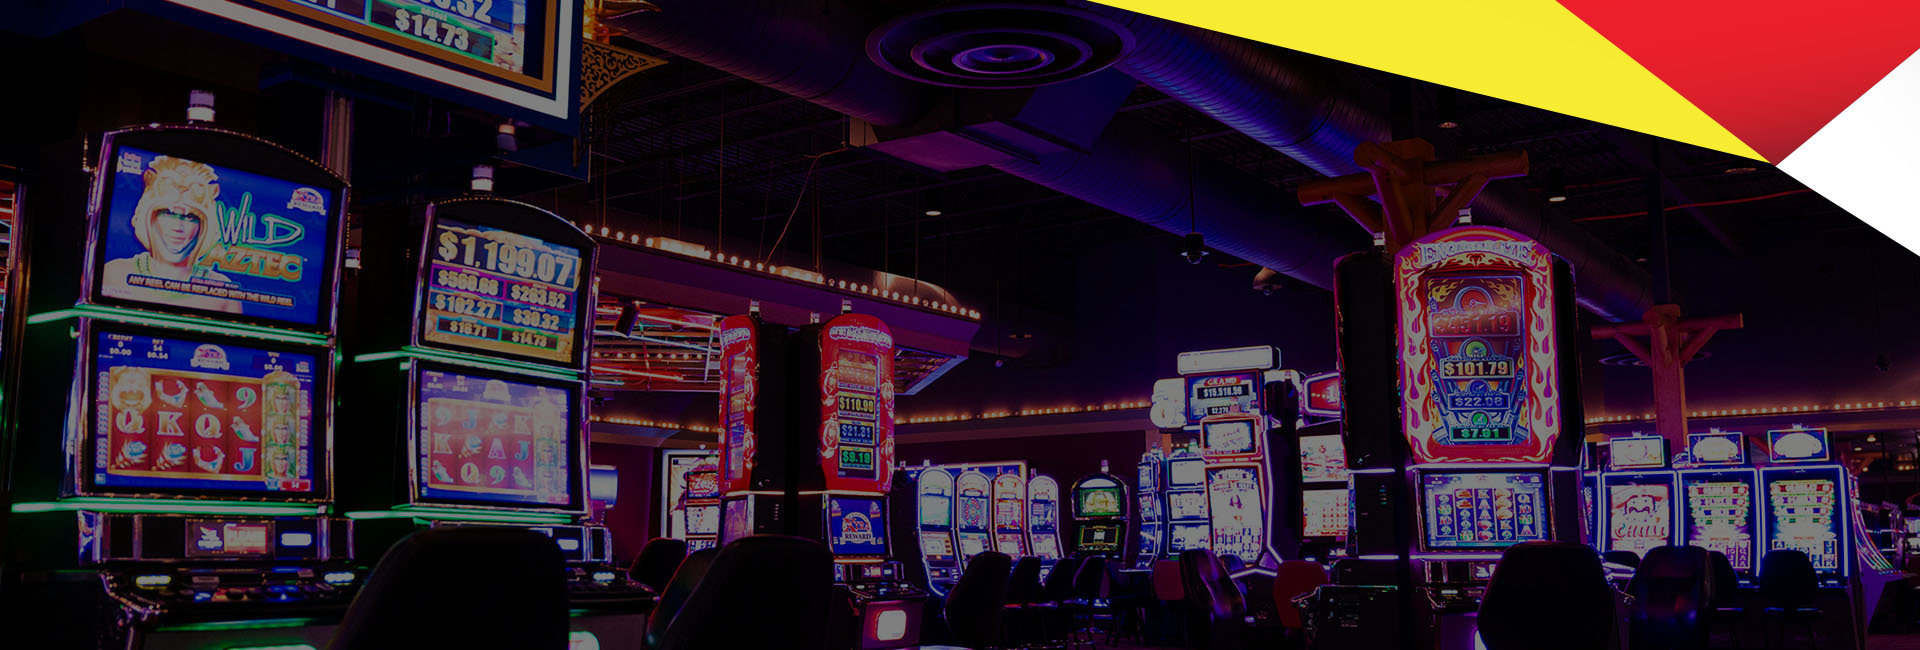 Bitcoin casinos e bingos cuando abren